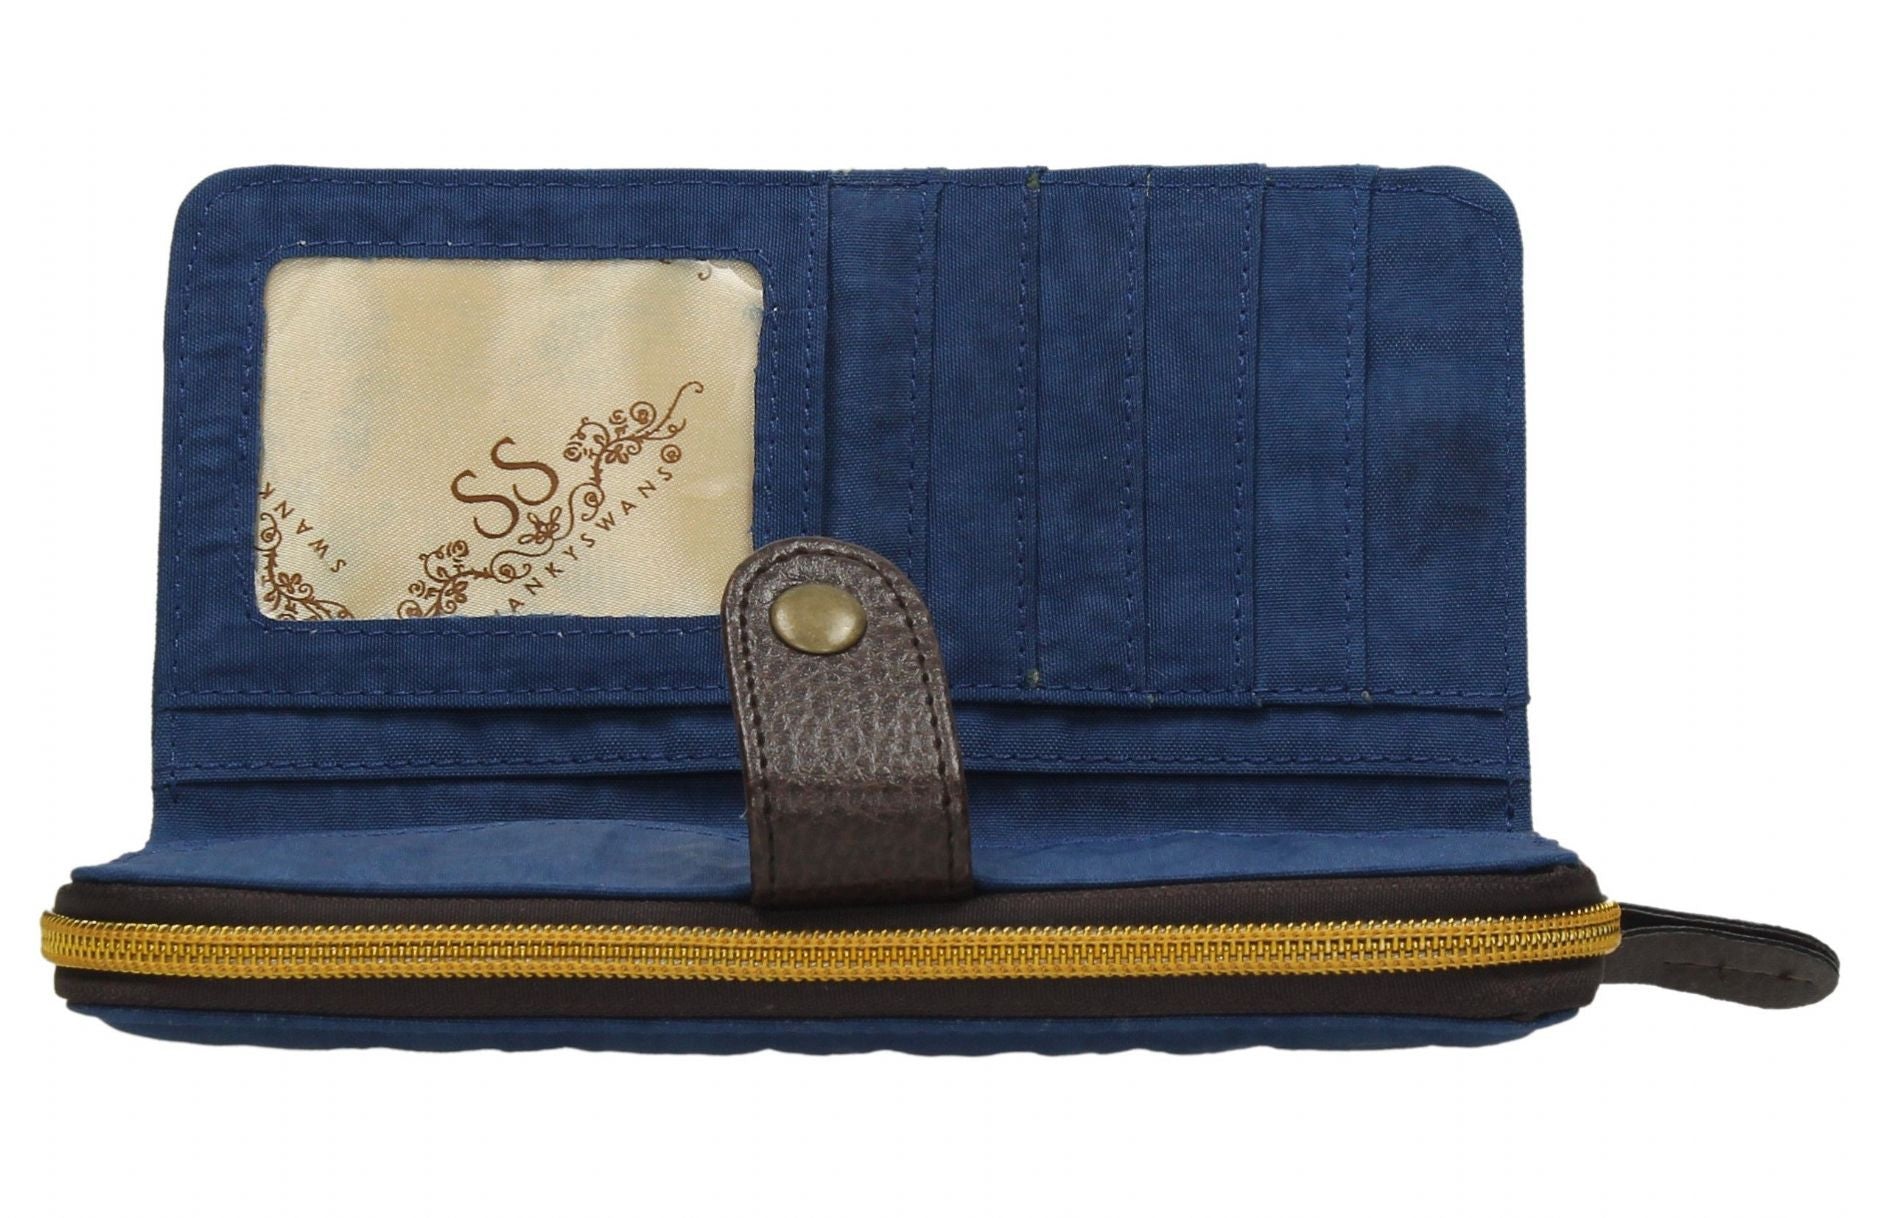 Swanky Swank Riley Nylon Large Bi-Fold Purse Dark BlueCheap Cute School Wallets Purses Bags Animal